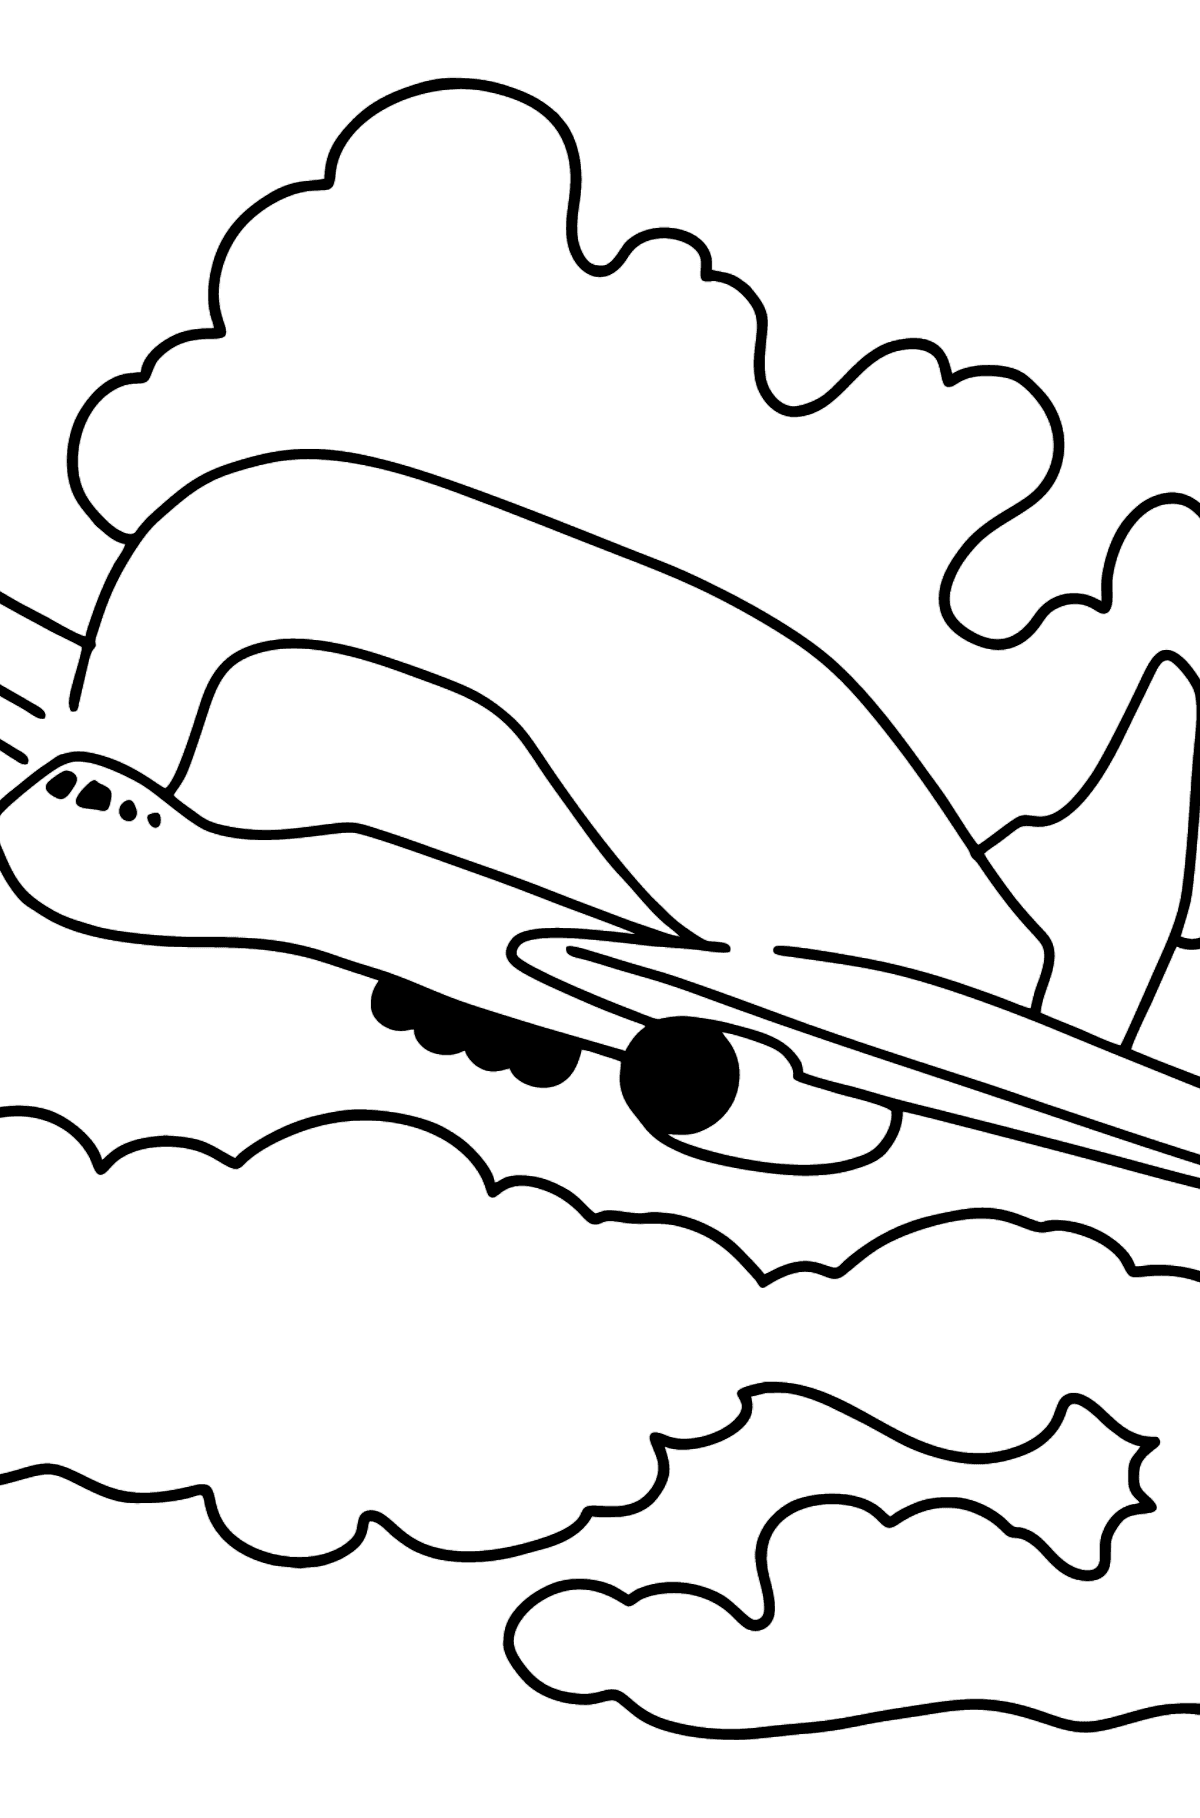 Boyama sayfası kargo uçağı - Boyamalar çocuklar için